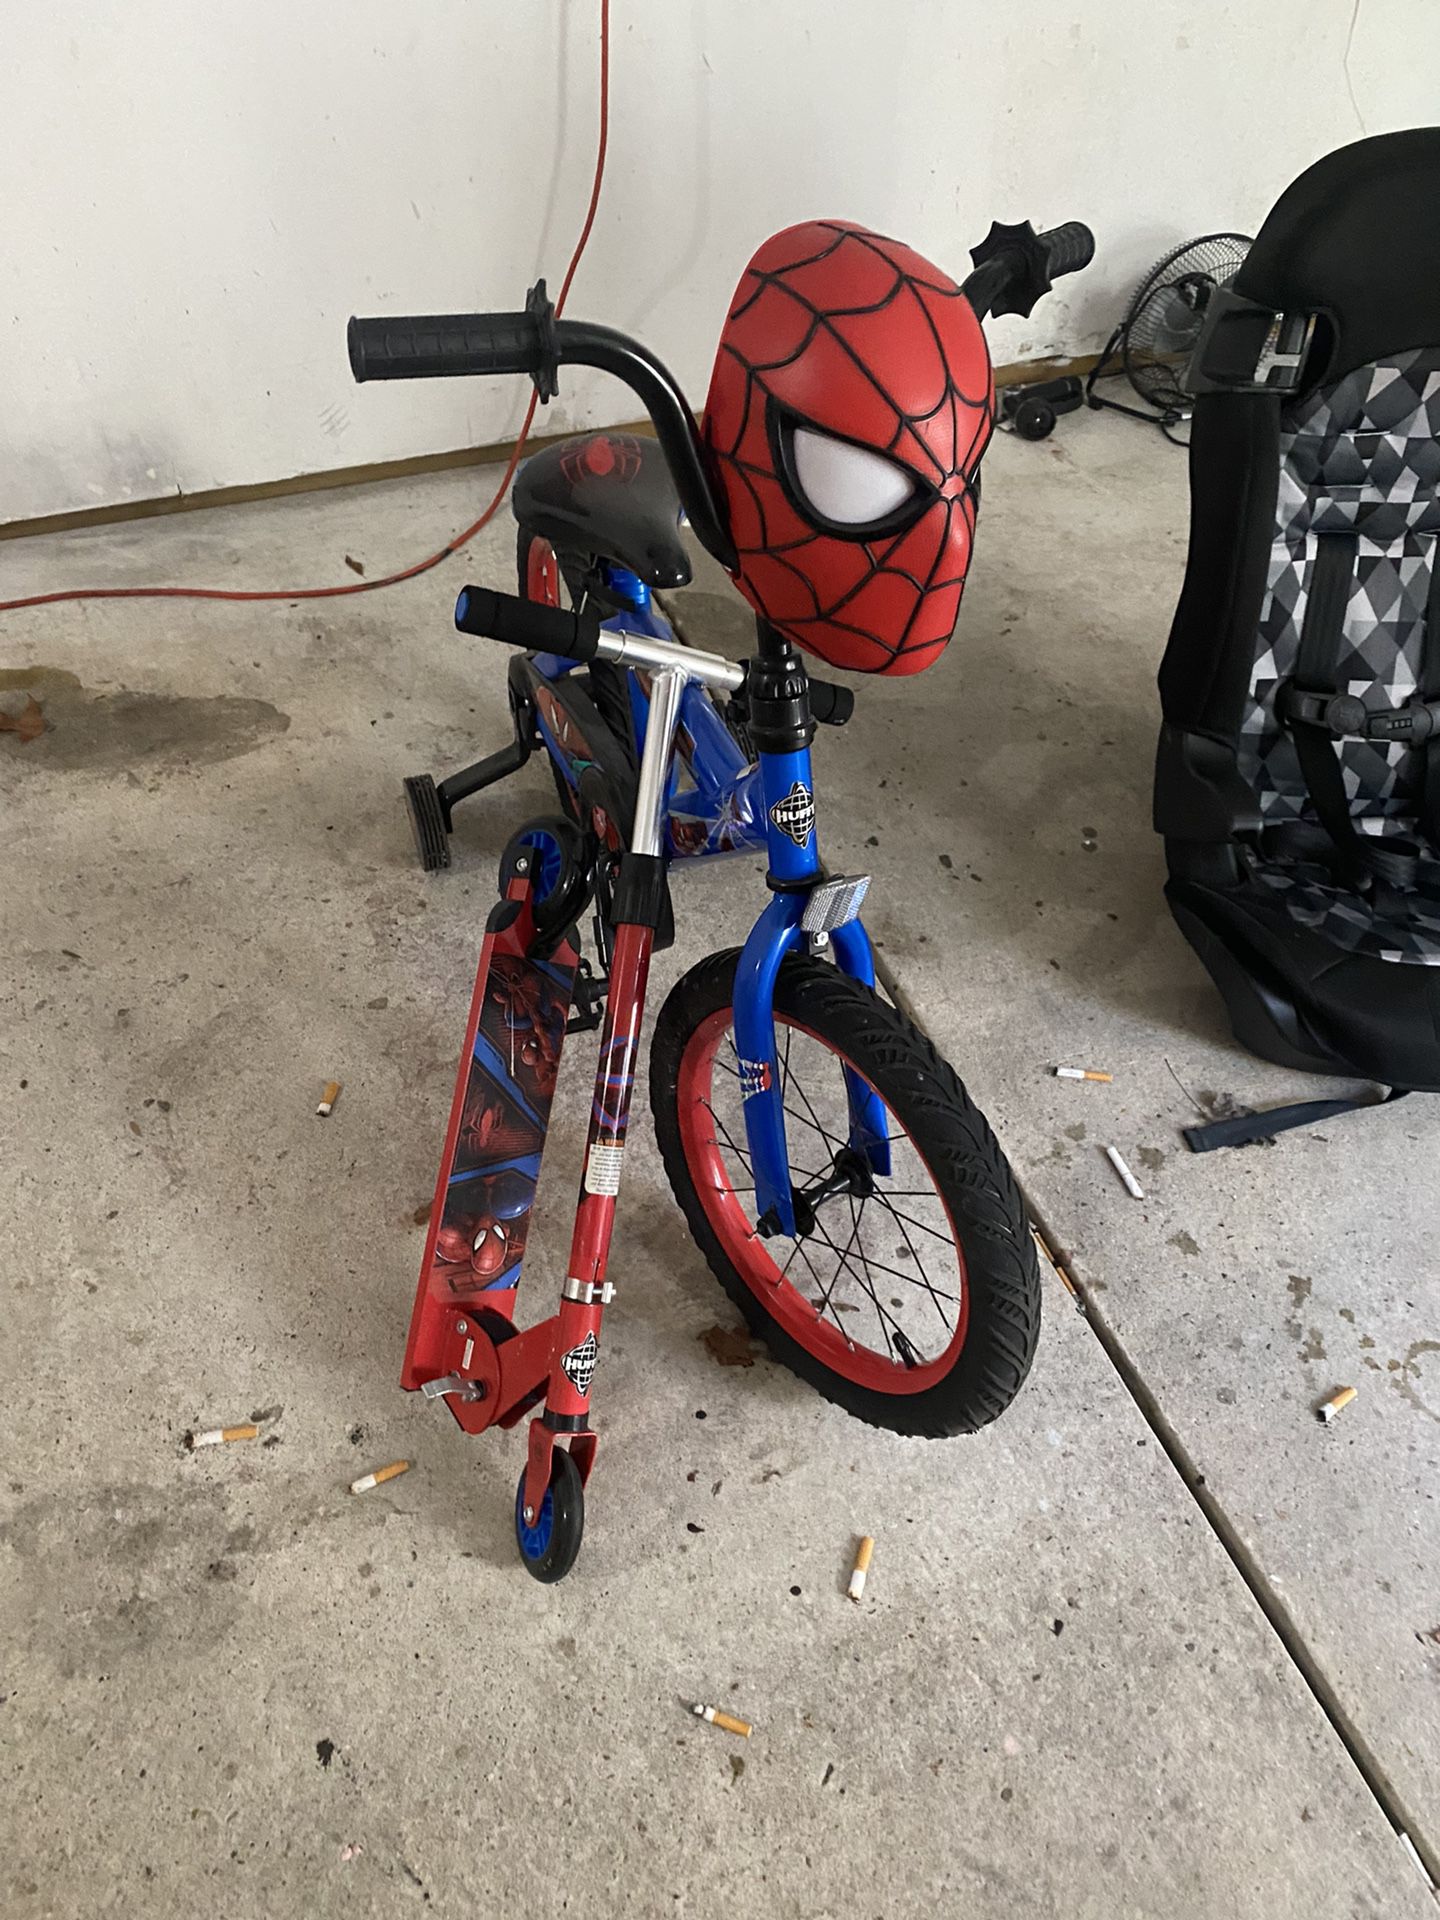 Spider-Man bike Spider-Man scooter